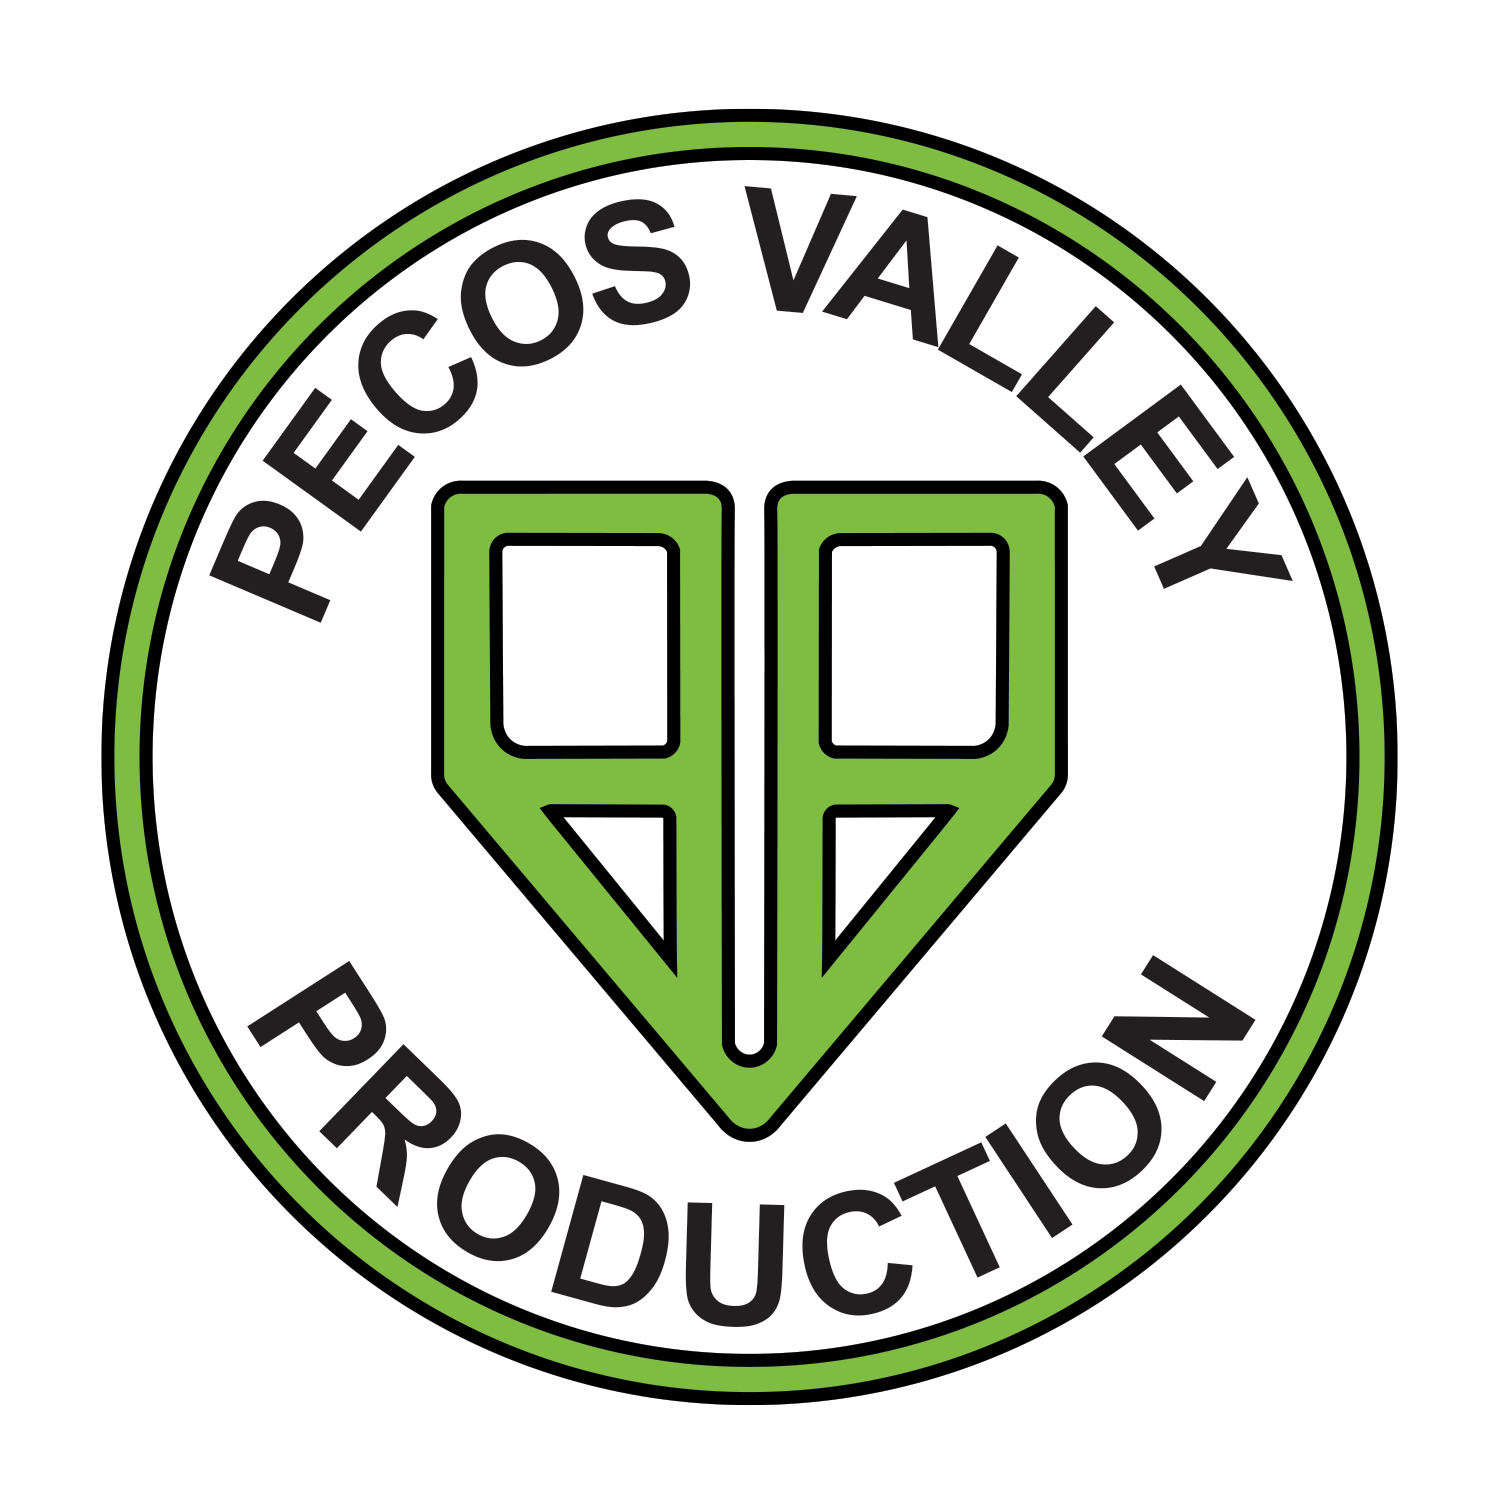 Pecos Valley Production - Portales logo